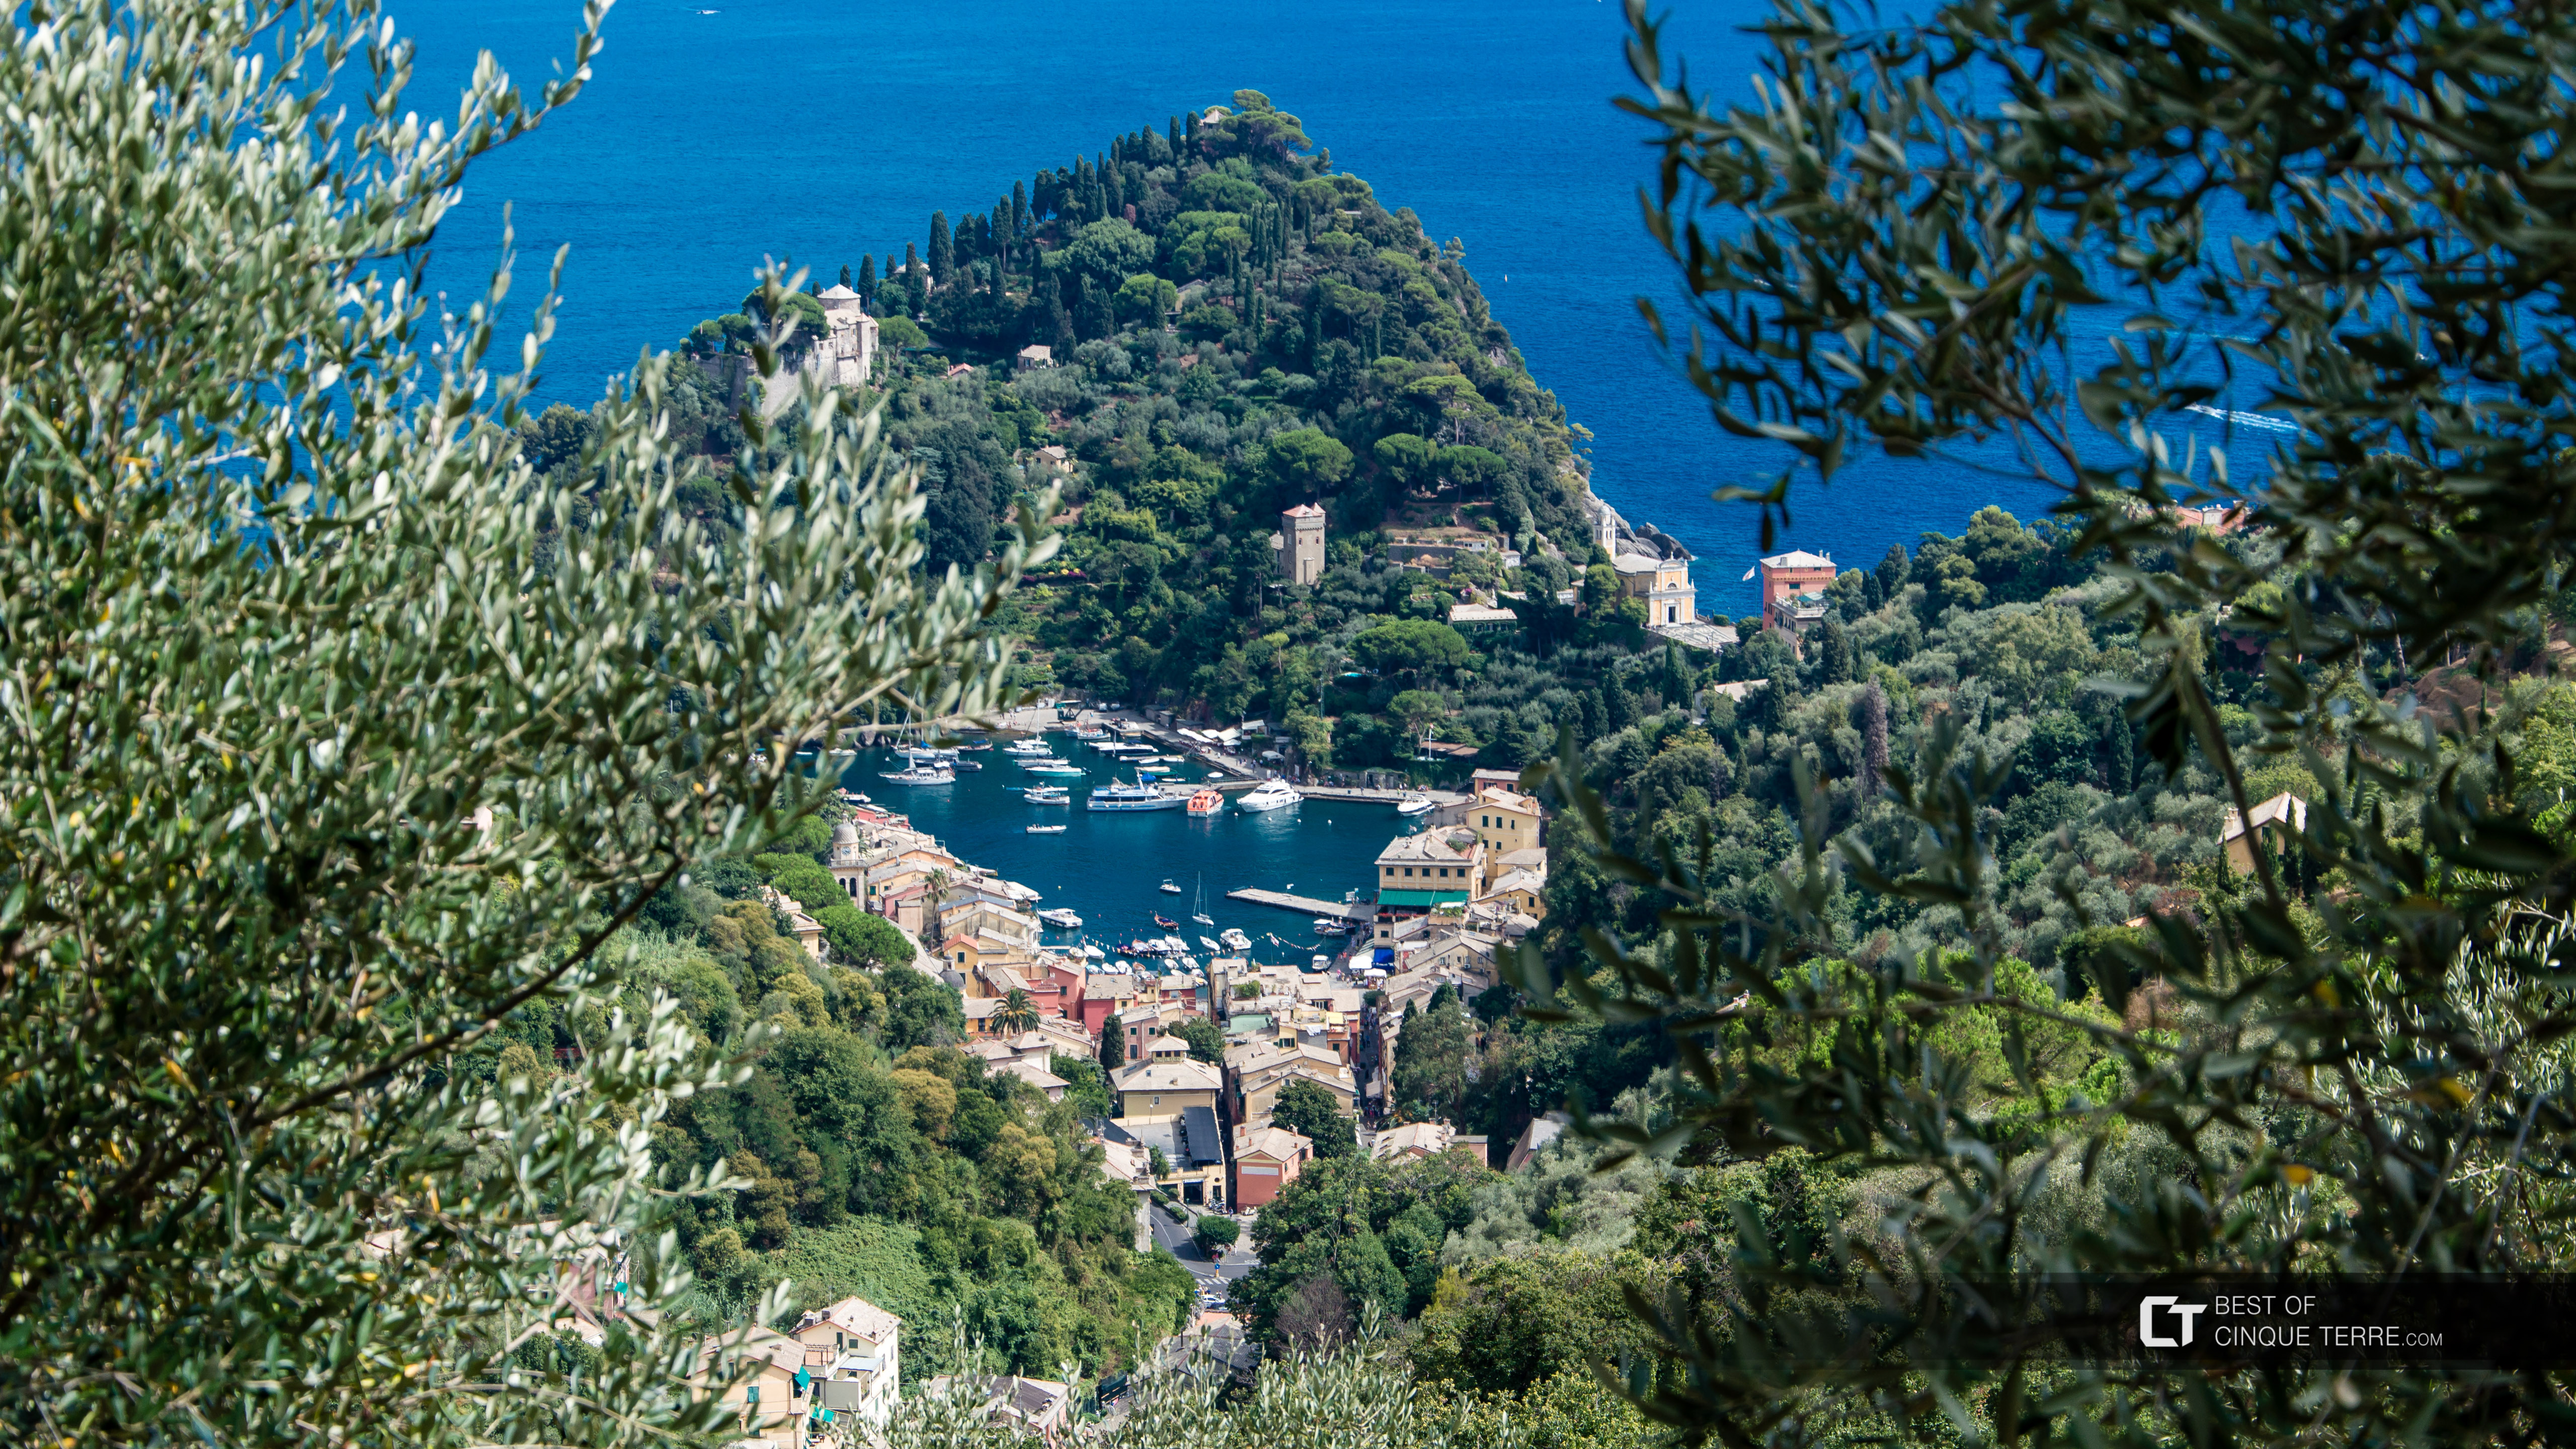 Vista da vila pela trilha que leva até a Abadia de San Fruttuoso, Portofino, Itália